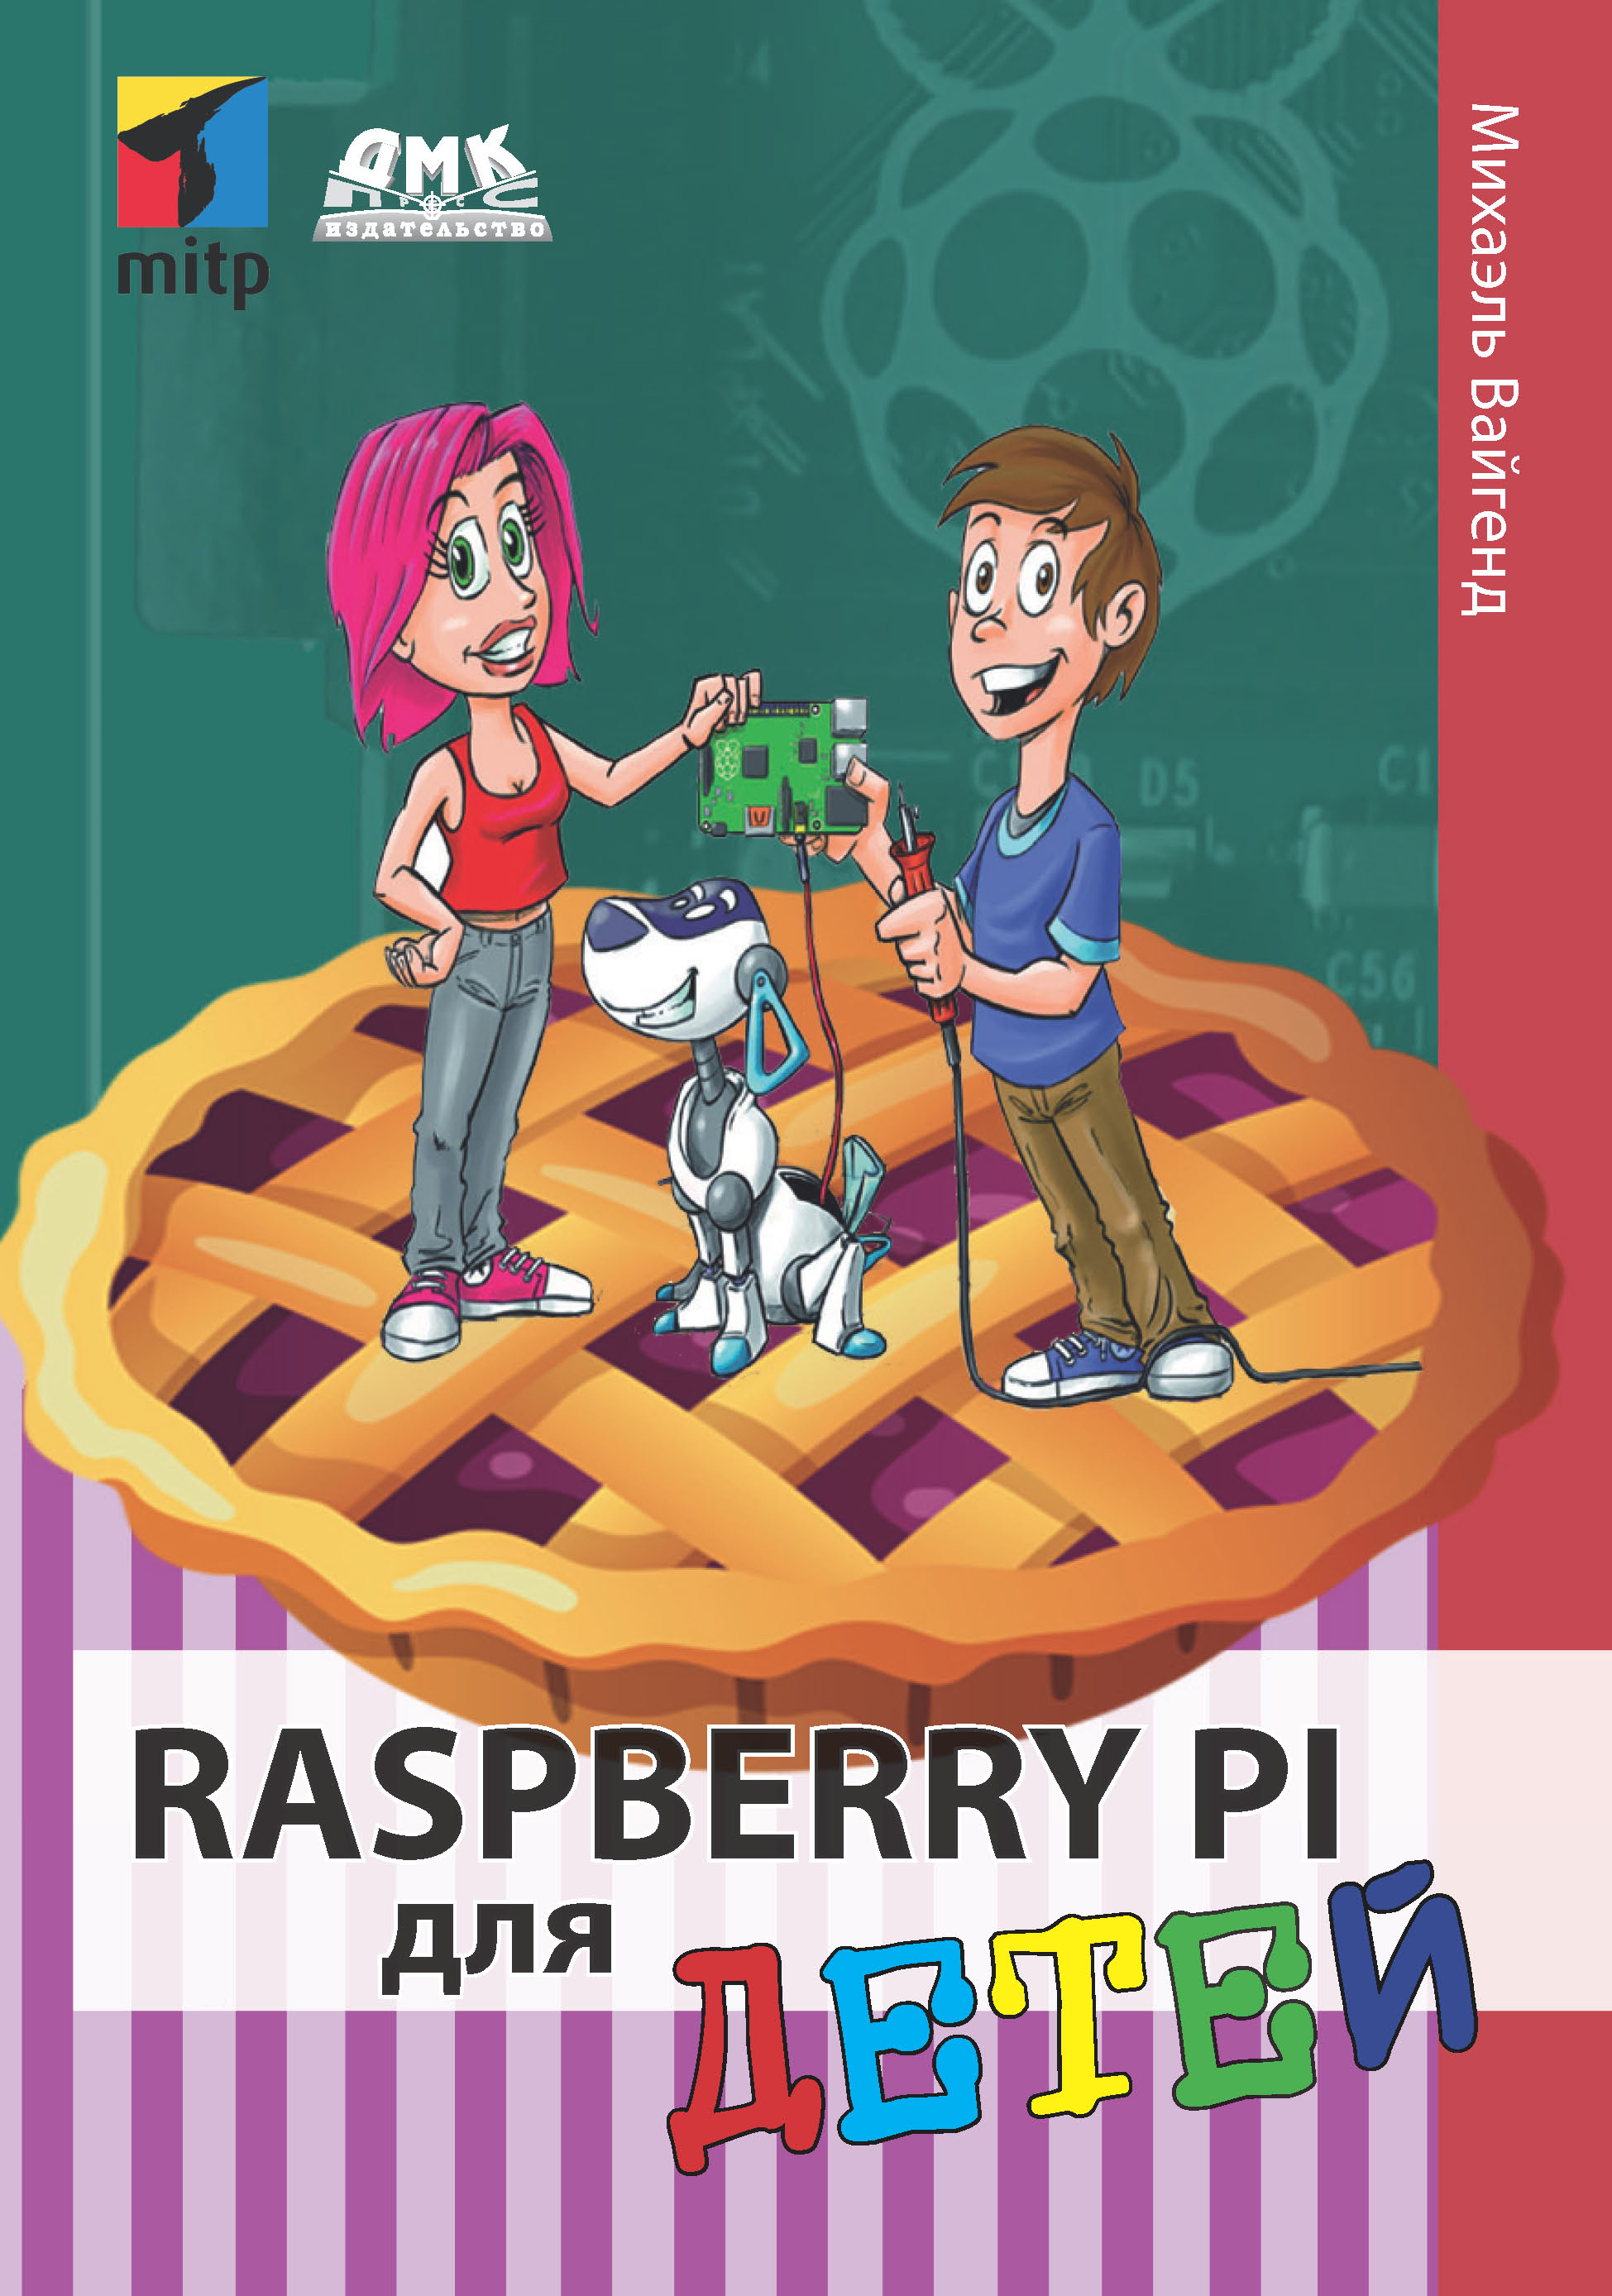 Книга  Raspberry Pi для детей созданная Михаэль Вайгенд, Ю. Ю. Энглерт может относится к жанру детская познавательная и развивающая литература, зарубежная компьютерная литература, зарубежная образовательная литература, зарубежные детские книги, книги для подростков, программирование, электроника. Стоимость электронной книги Raspberry Pi для детей с идентификатором 48411439 составляет 790.00 руб.